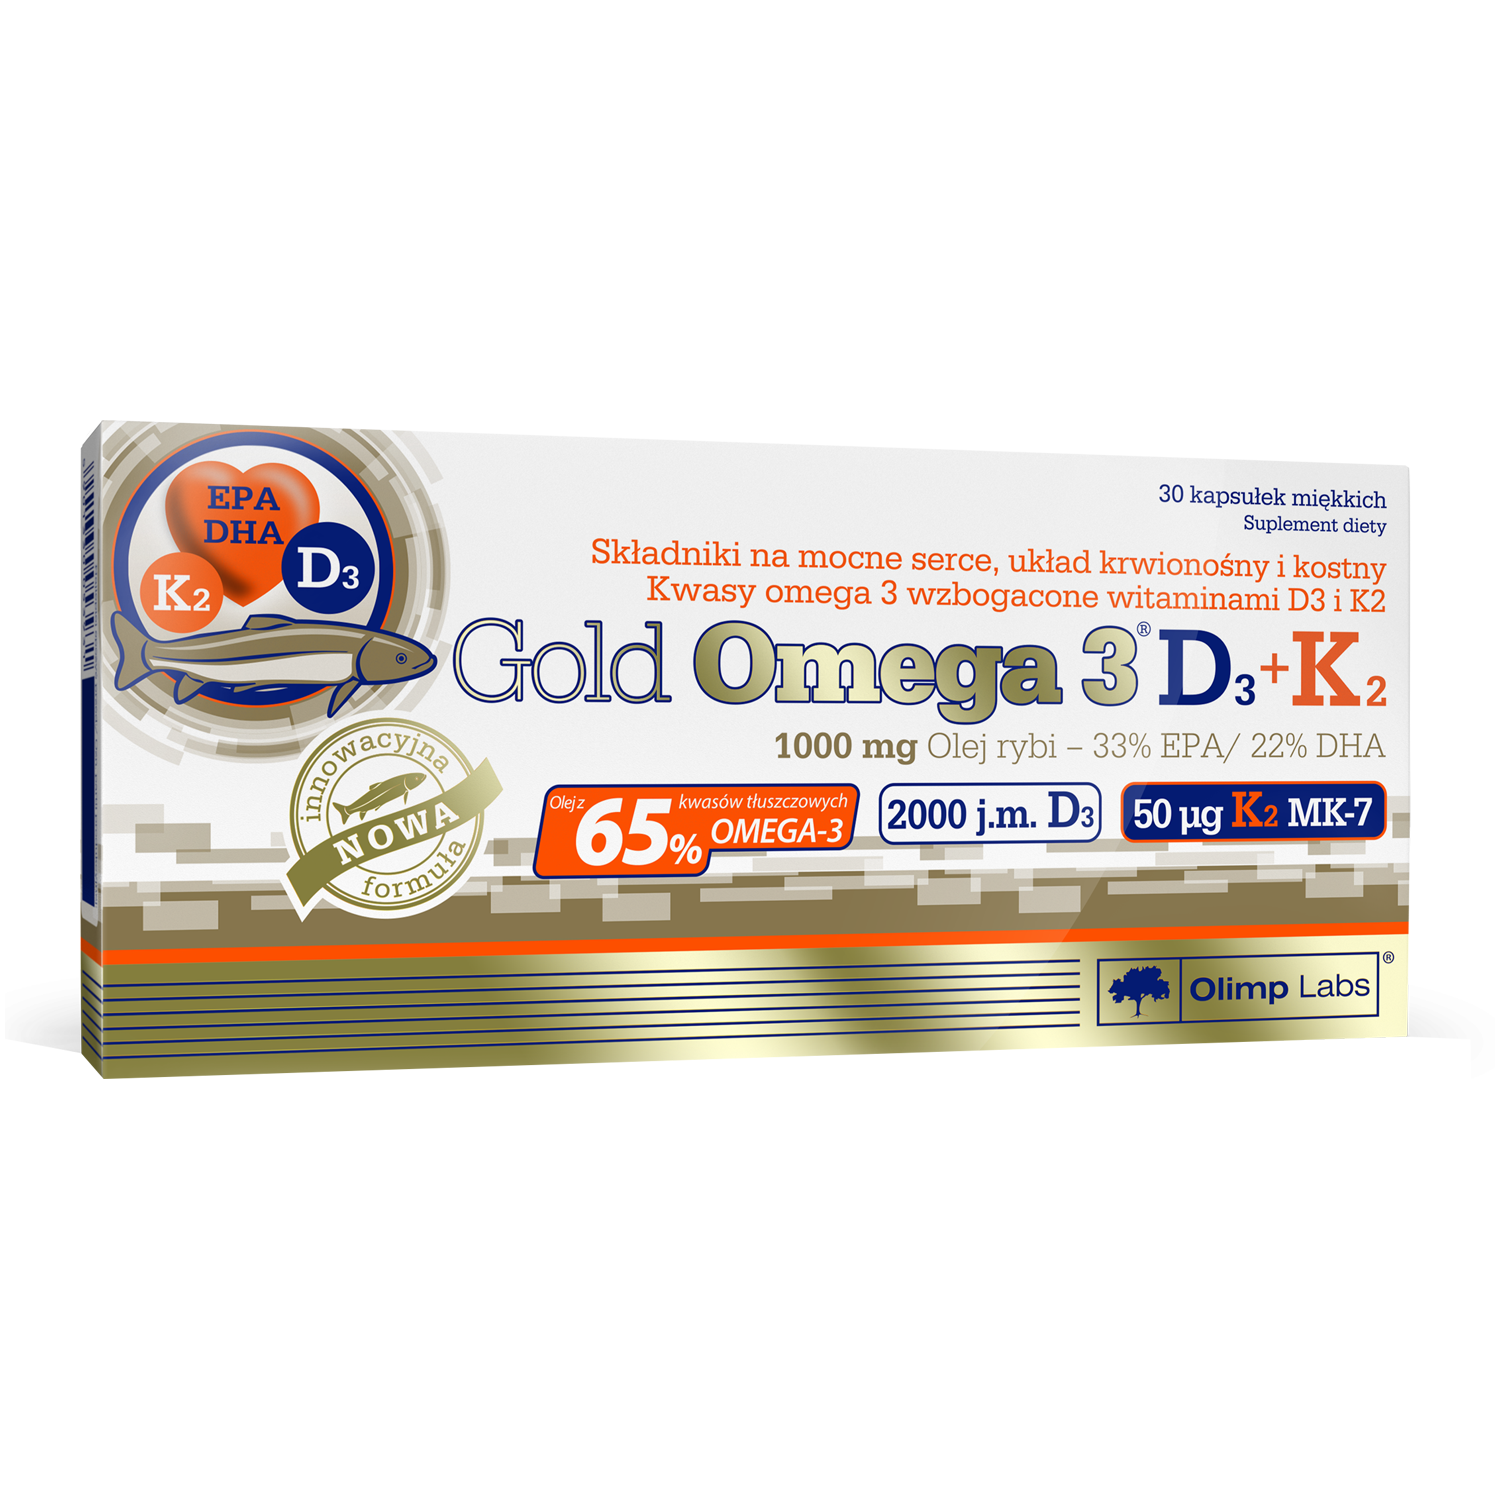 Olimp Gold Omega D3+K2 биологически активная добавка, 30 капсул/1 упаковка биологически активная добавка mirrolla mg d3 k2 b12 30 шт